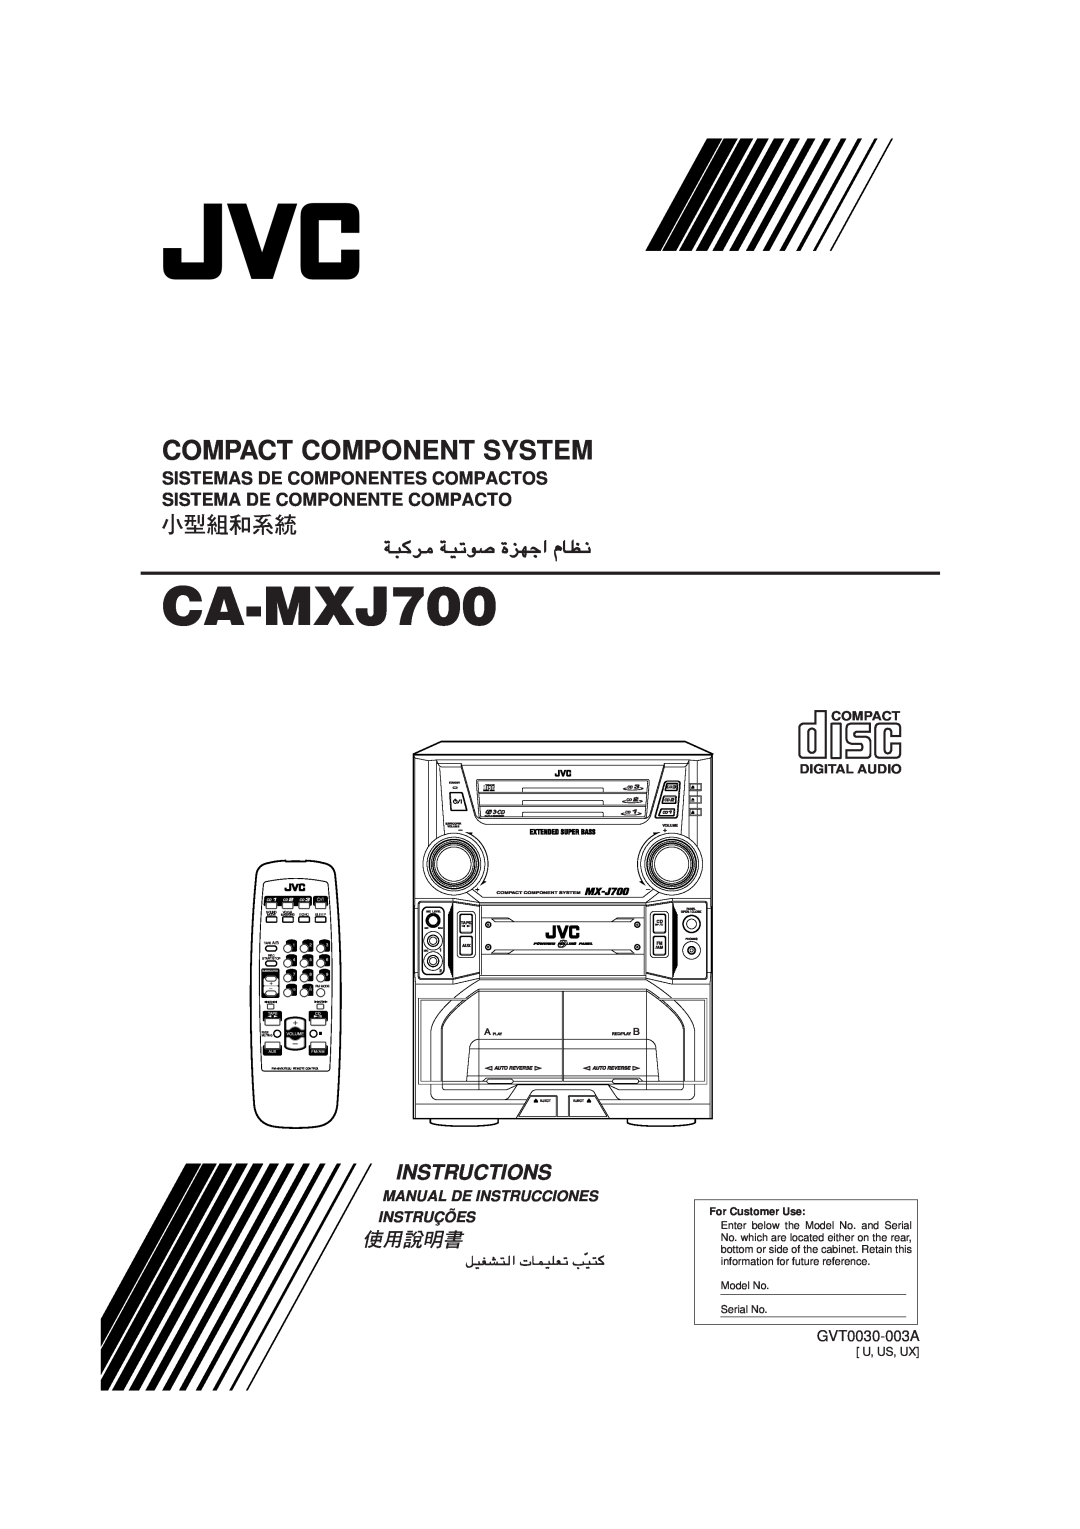 JVC GVT0030-003A manual CA-MXJ700, Compact Component System, Instructions, Manual De Instrucciones Instruções, Fade Muting 